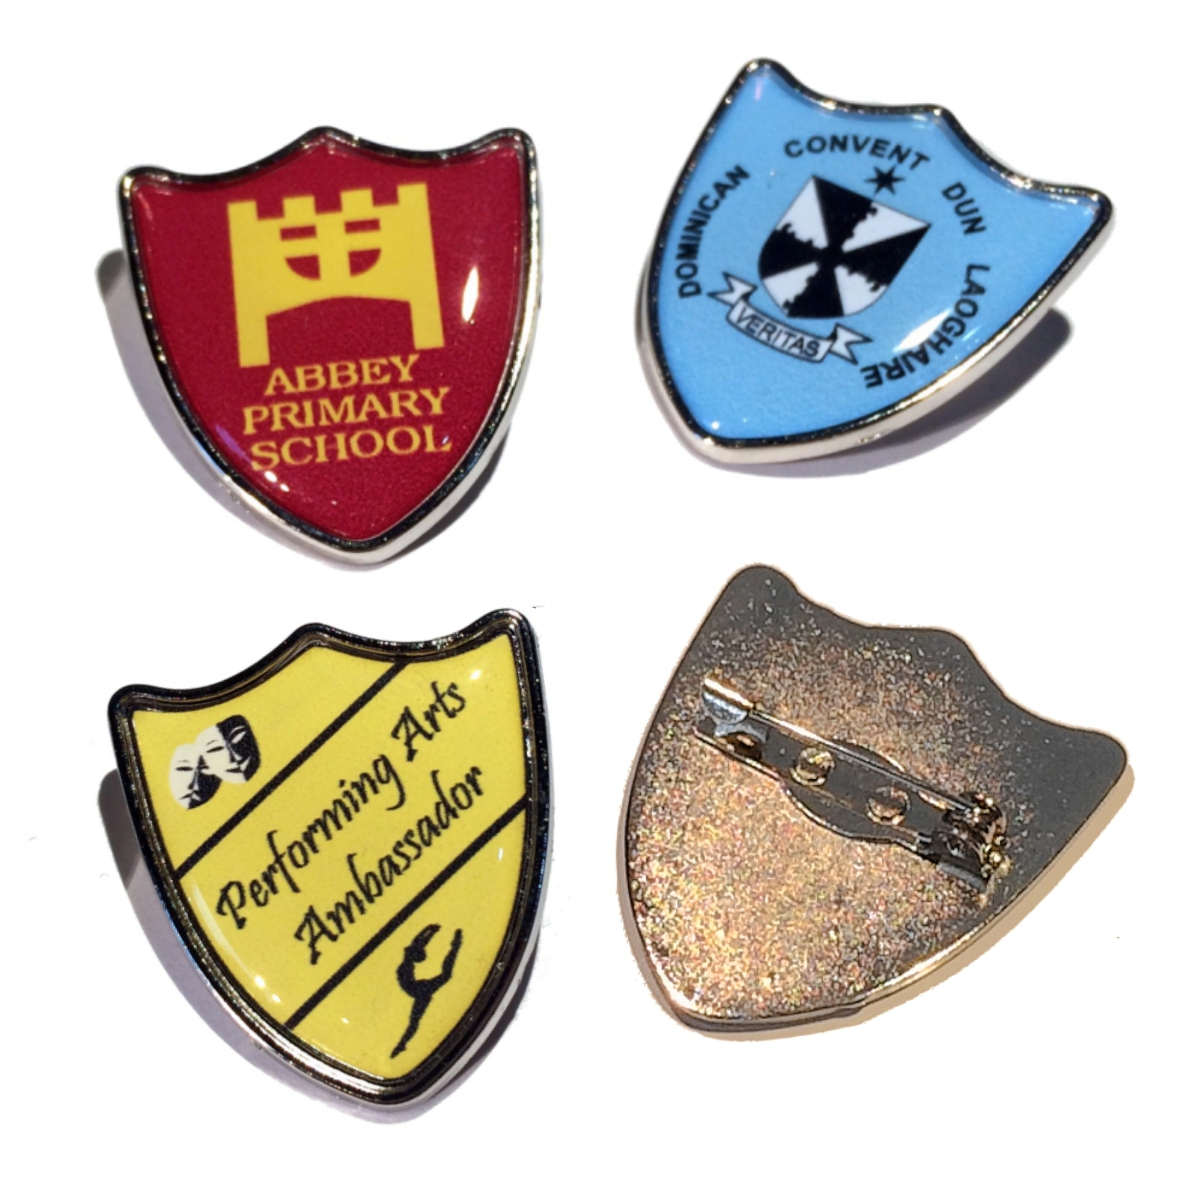 Premium shield badge